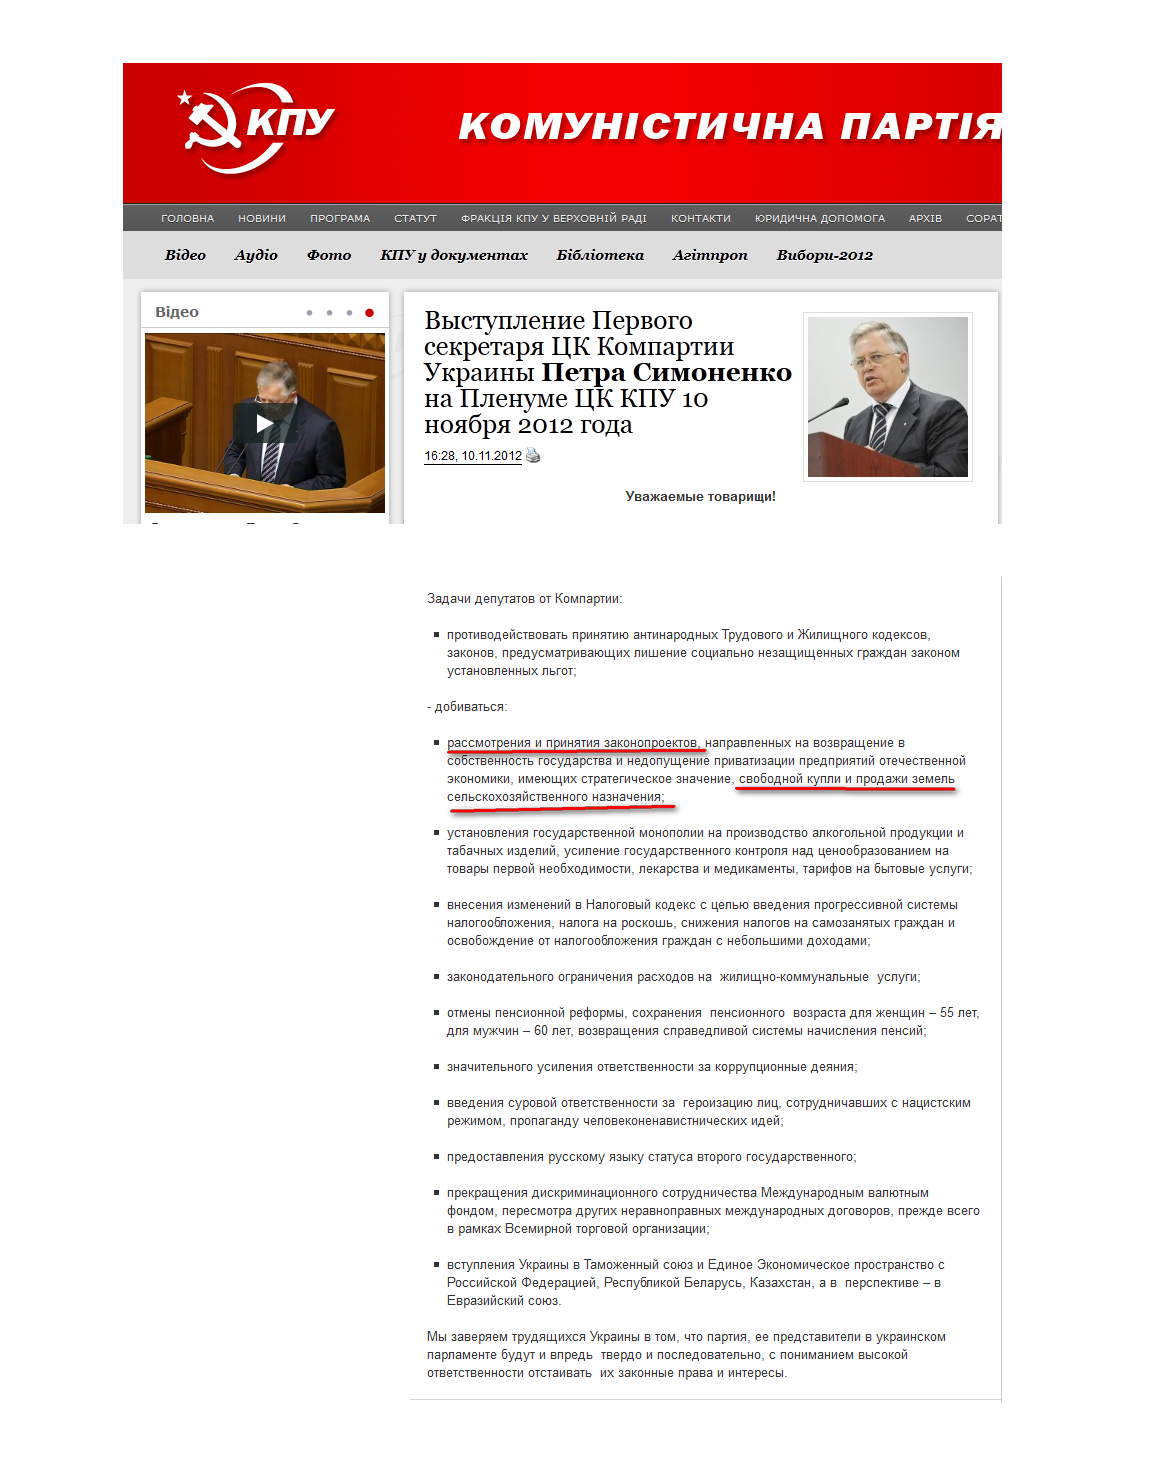 http://www.kpu.ua/vystuplenie-pervogo-sekretarya-ck-kompartii-ukrainy-petra-simonenko-na-plenume-ck-kpu-10-noyabrya-2012-goda/